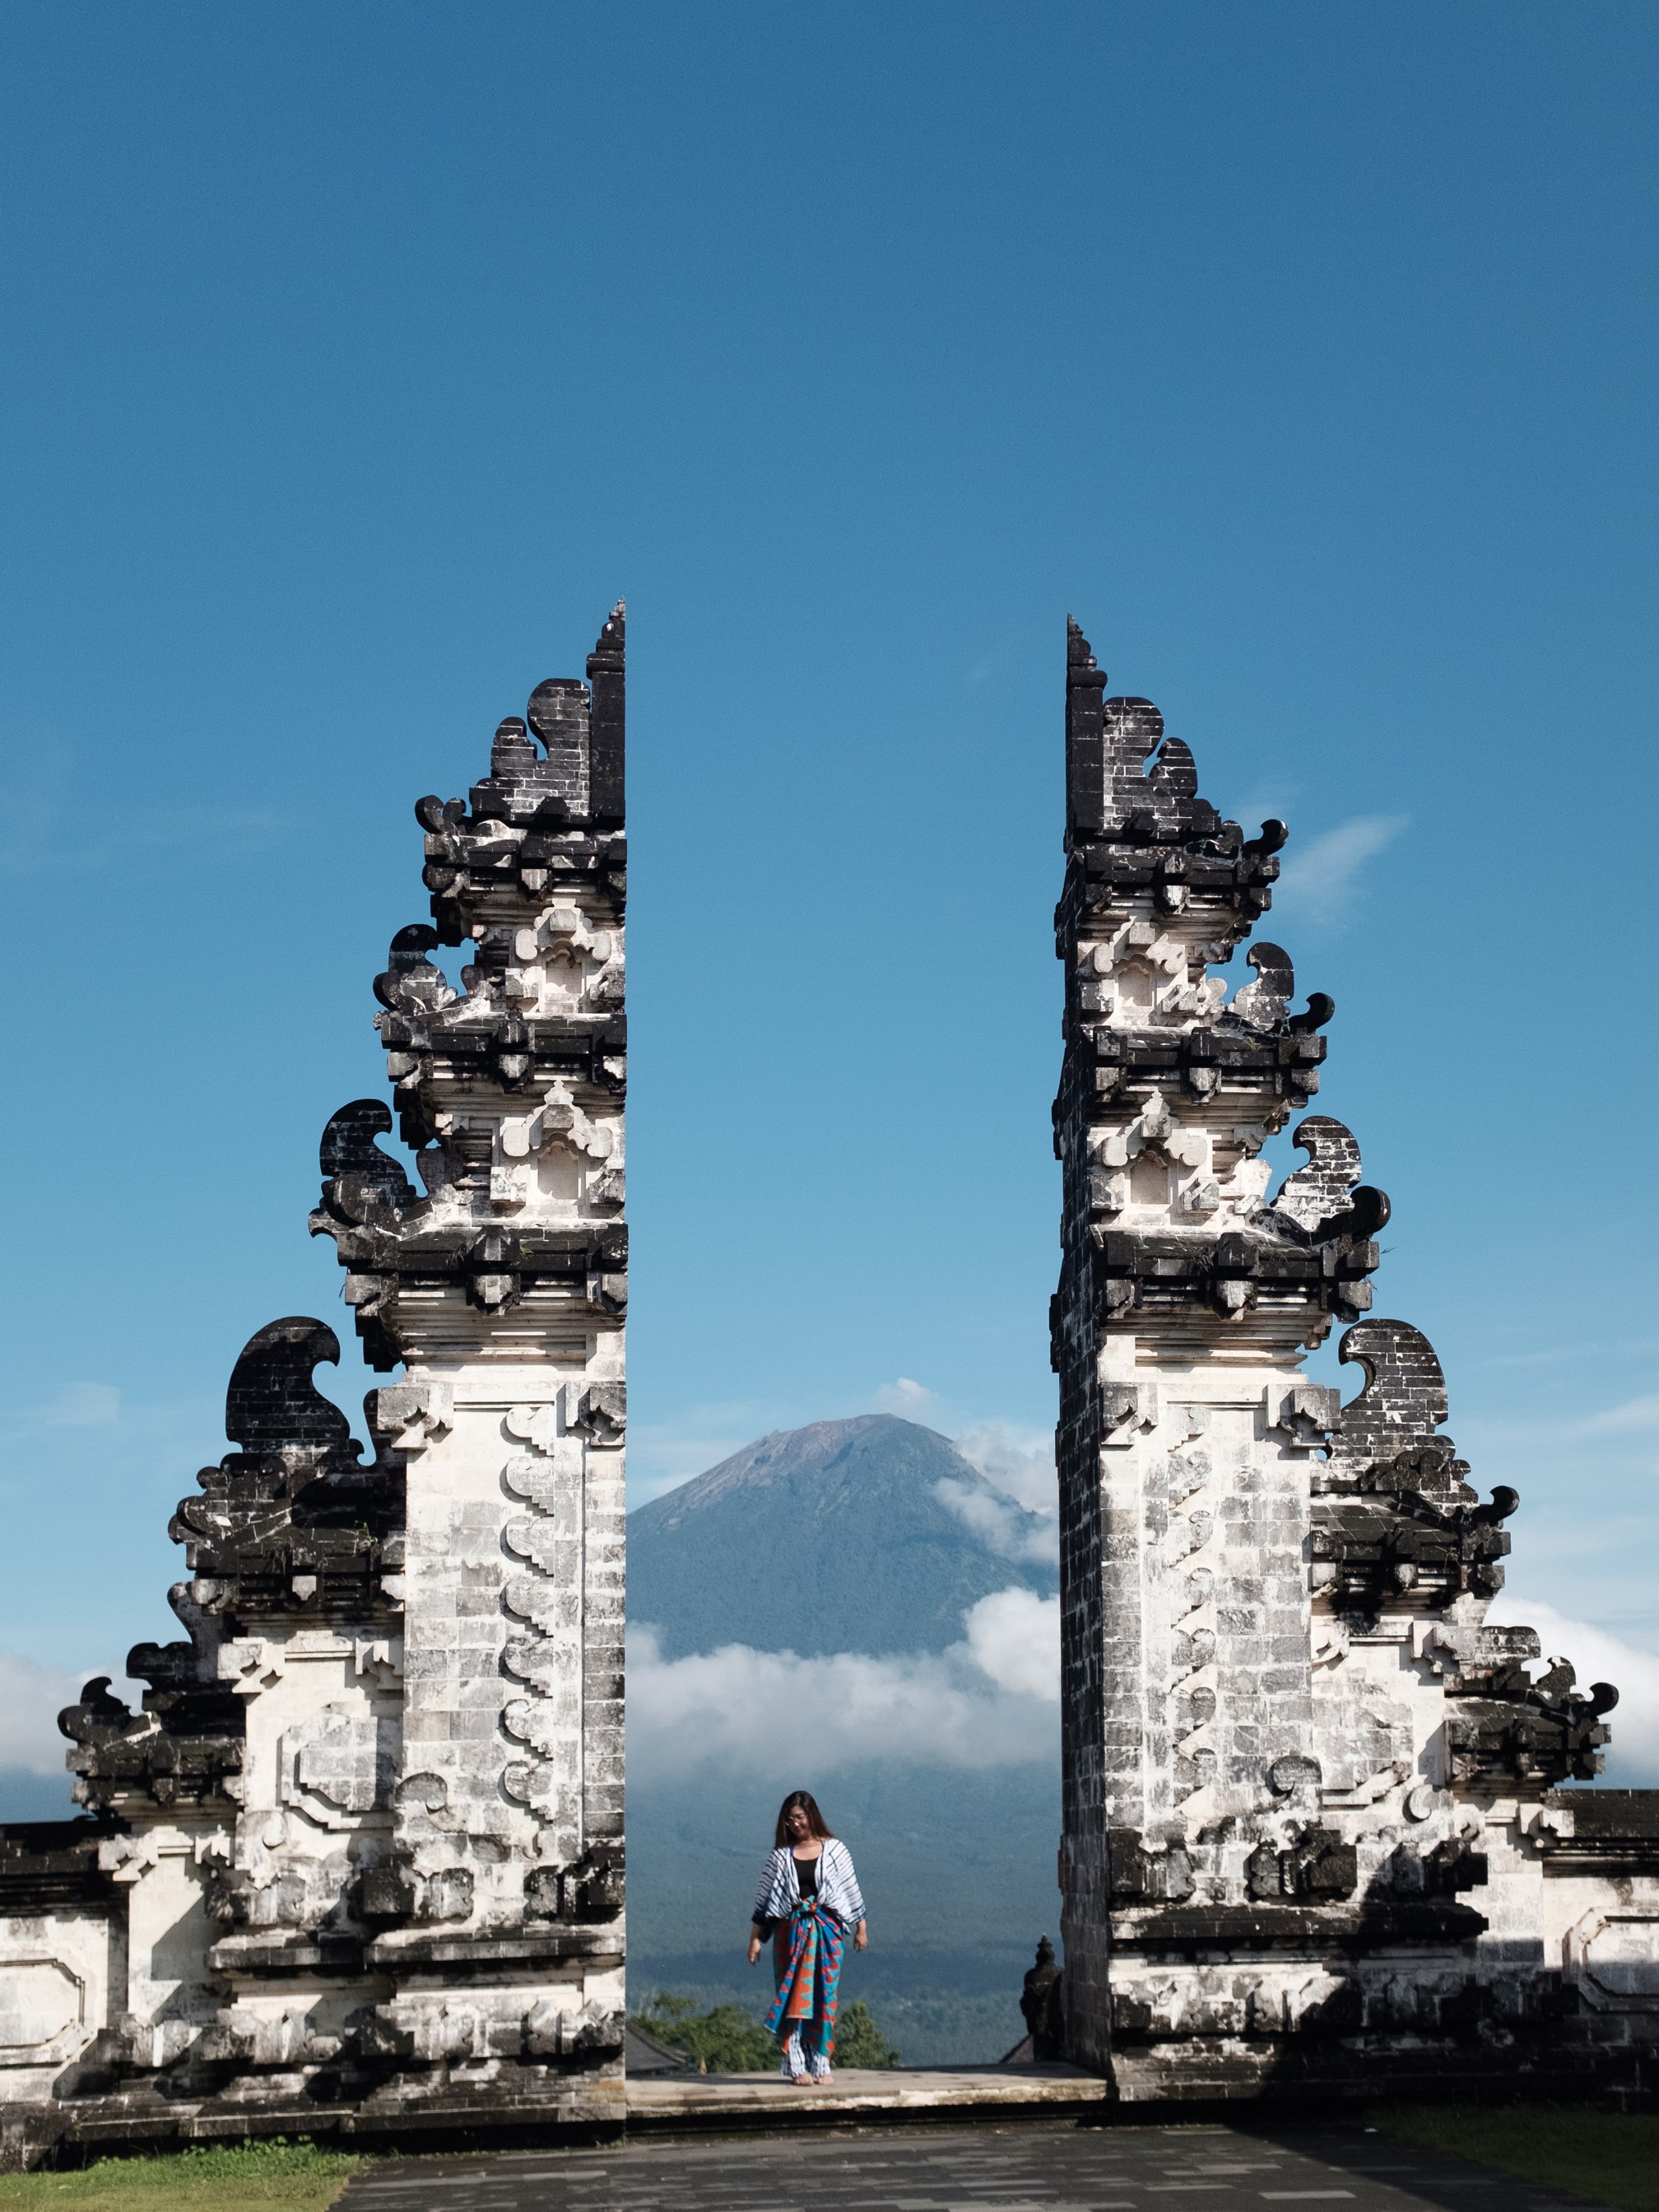 Must Go Insta-Famous Temple In Bali | Trip.com Bali